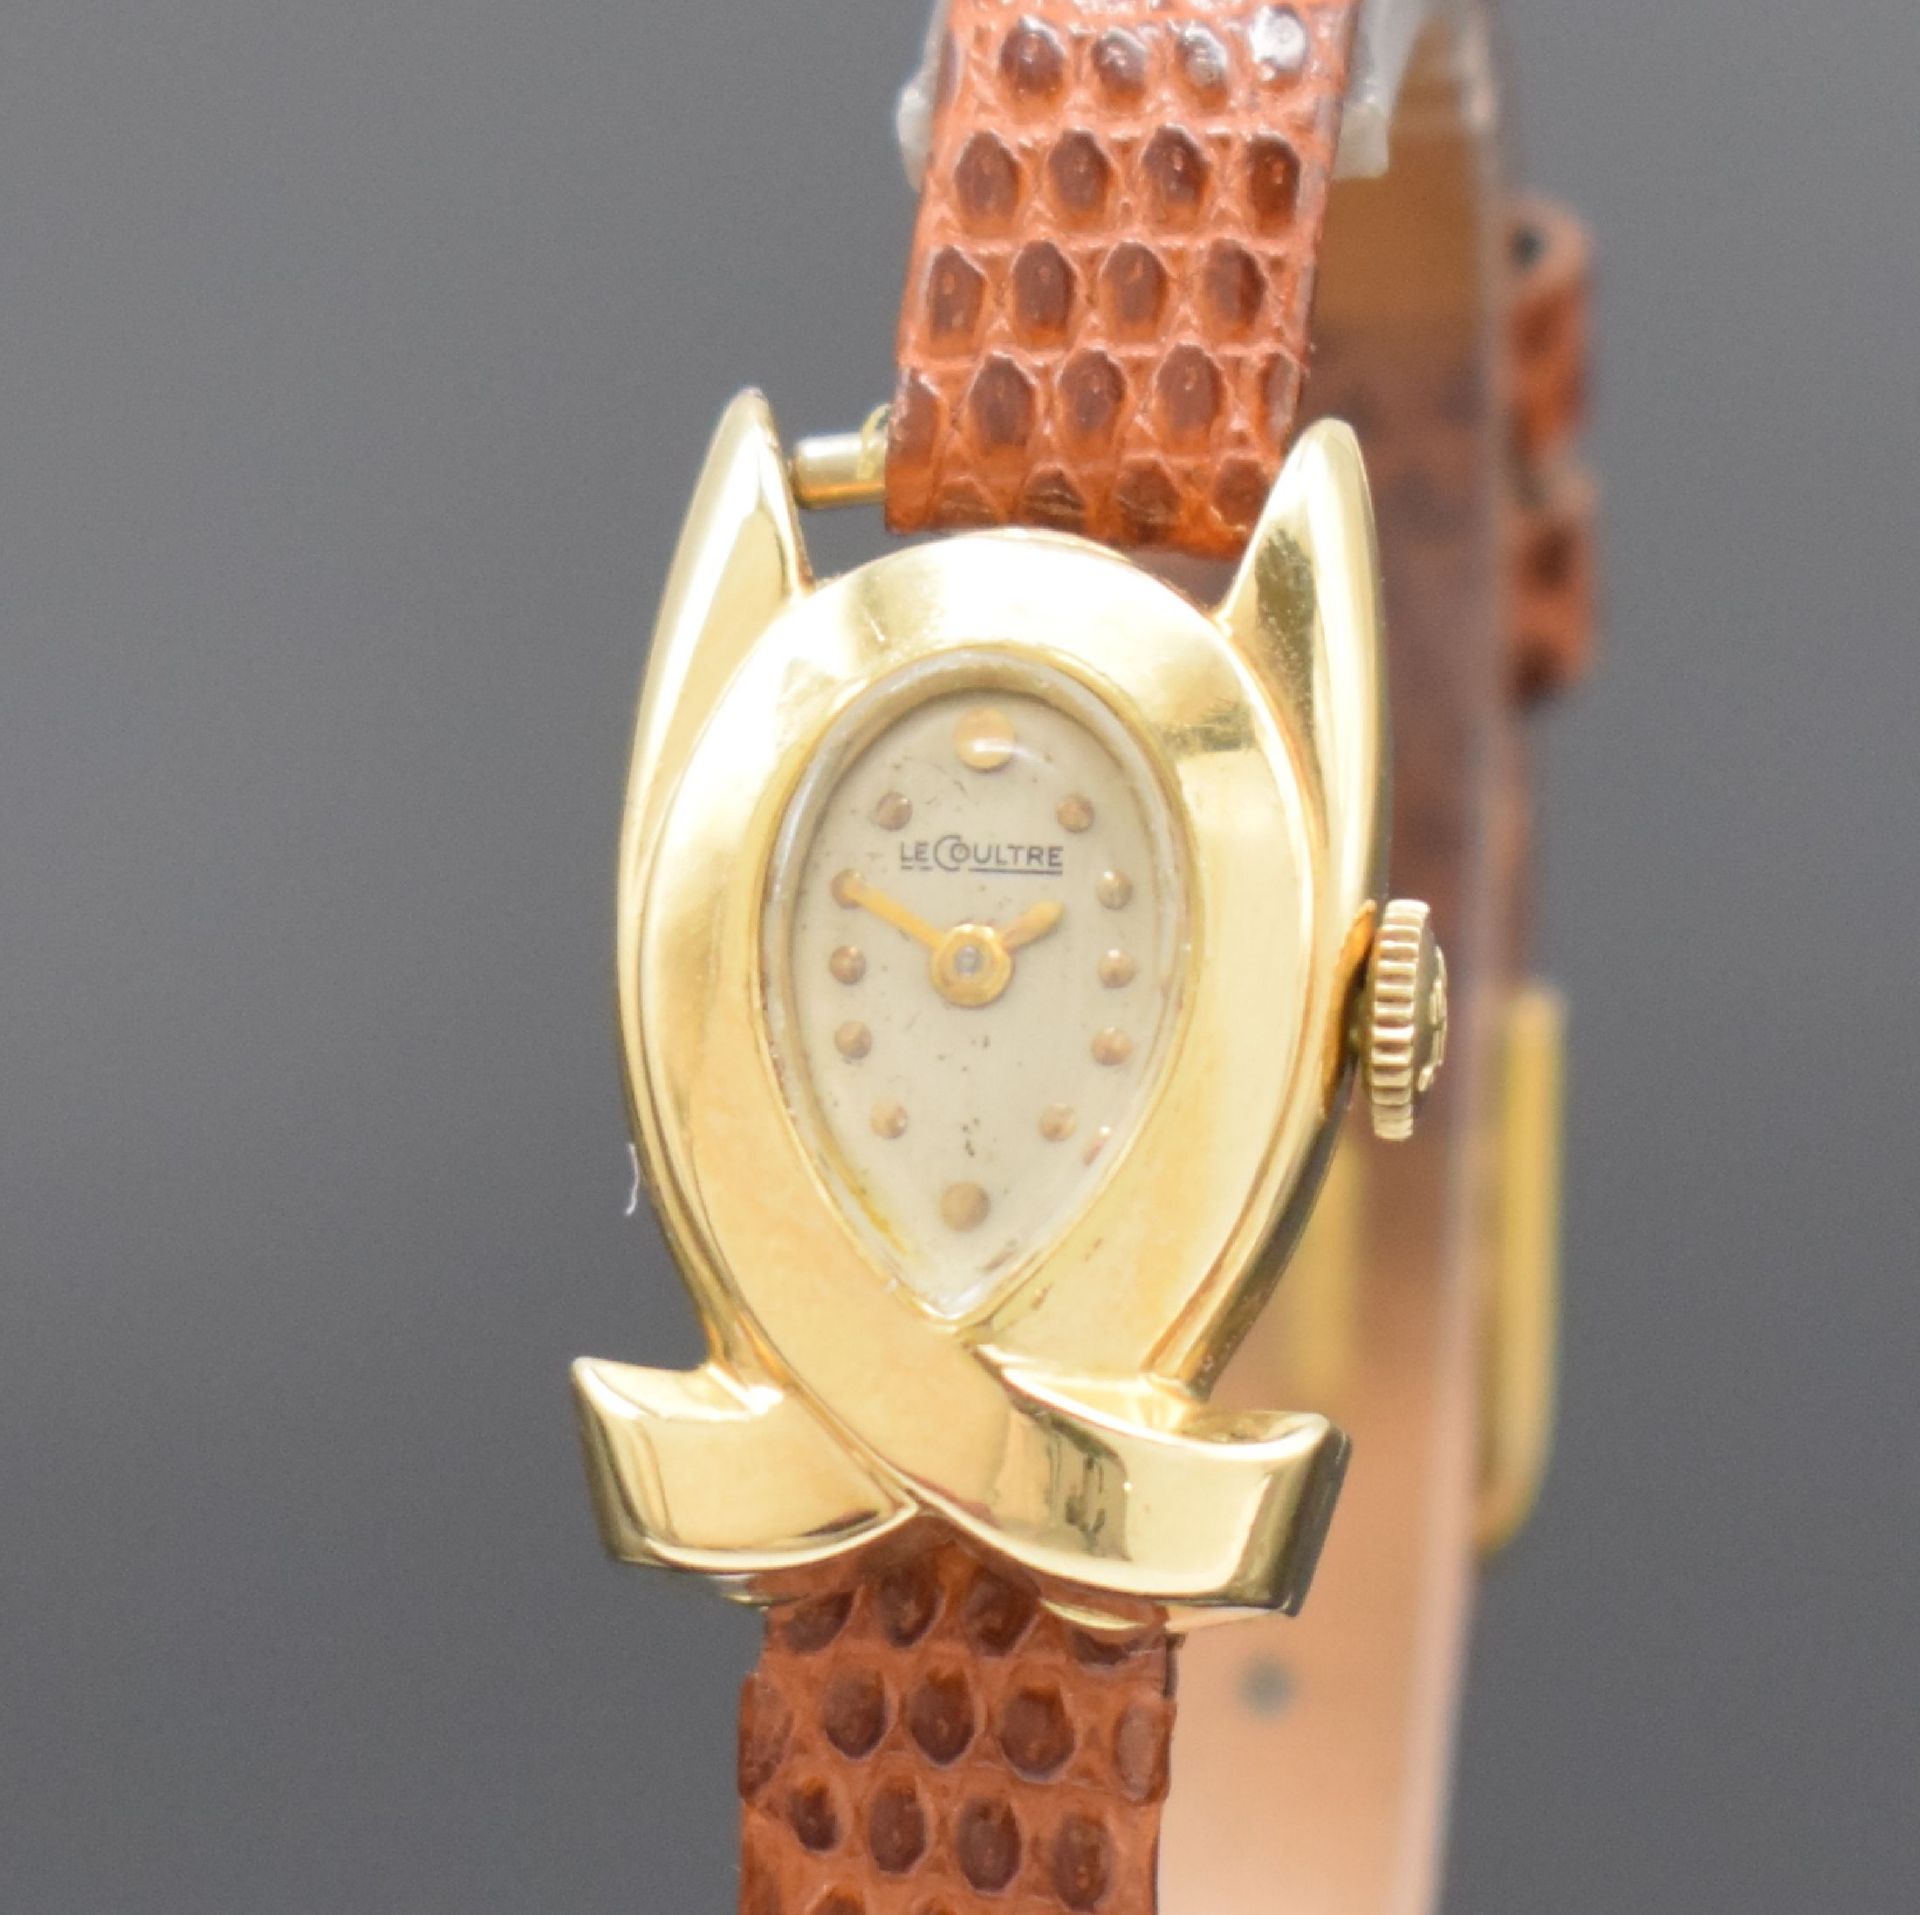 LeCoultre seltene Damenarmbanduhr in Form einer Schleife - Image 2 of 6